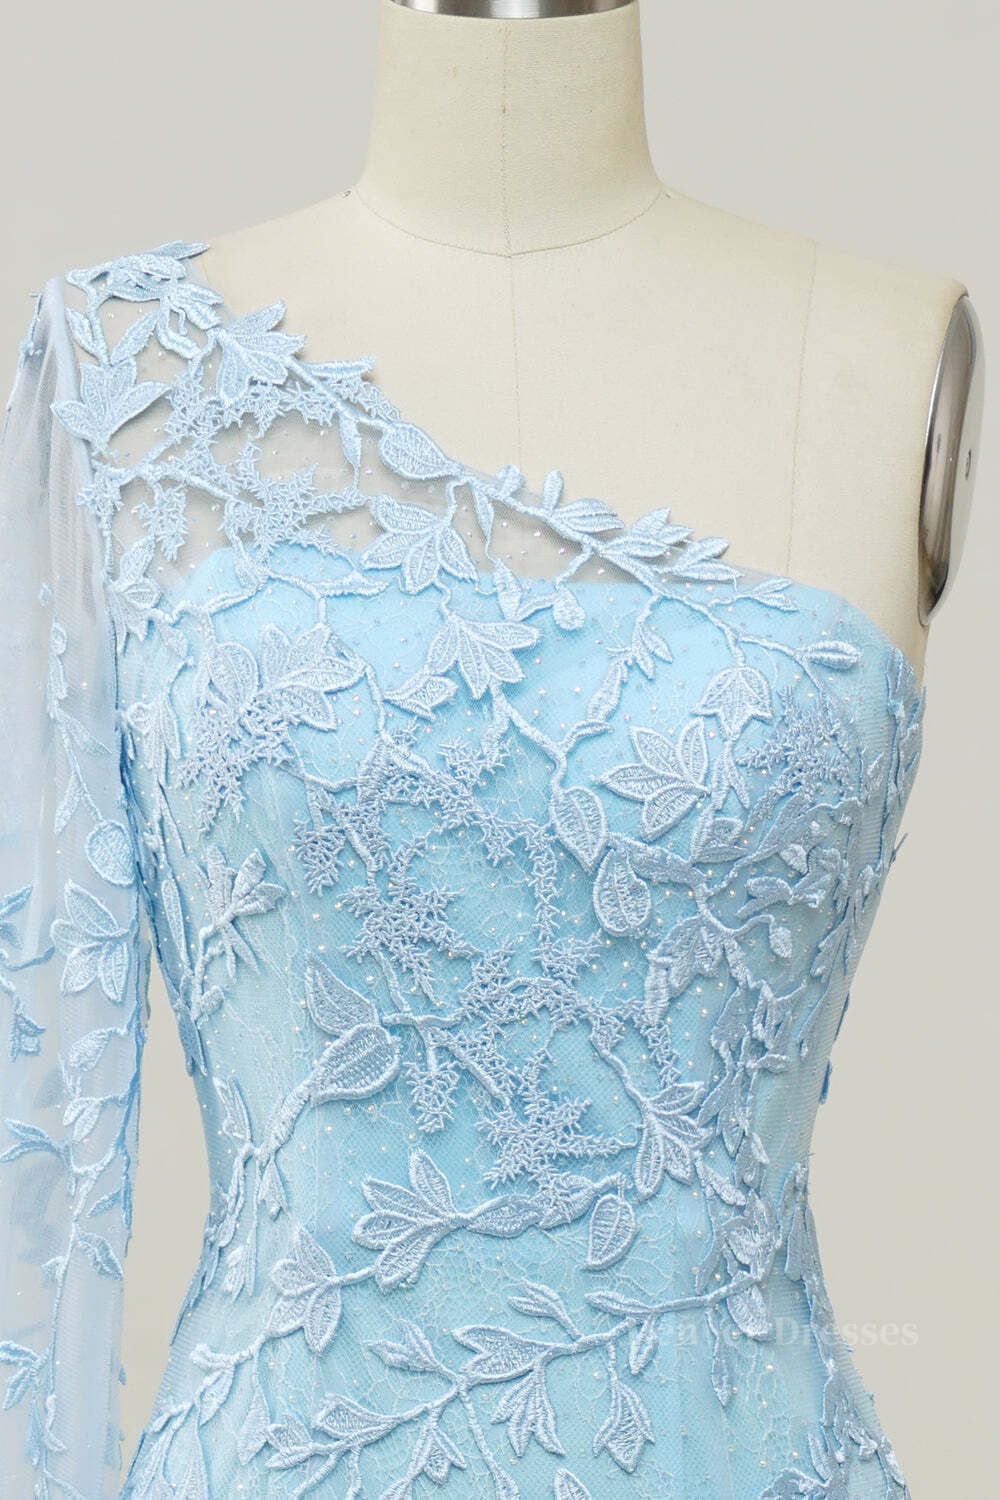 Formal Dress Website, Light Blue One Shoulder Appliques Mermaid Long Prom Dress with Slit